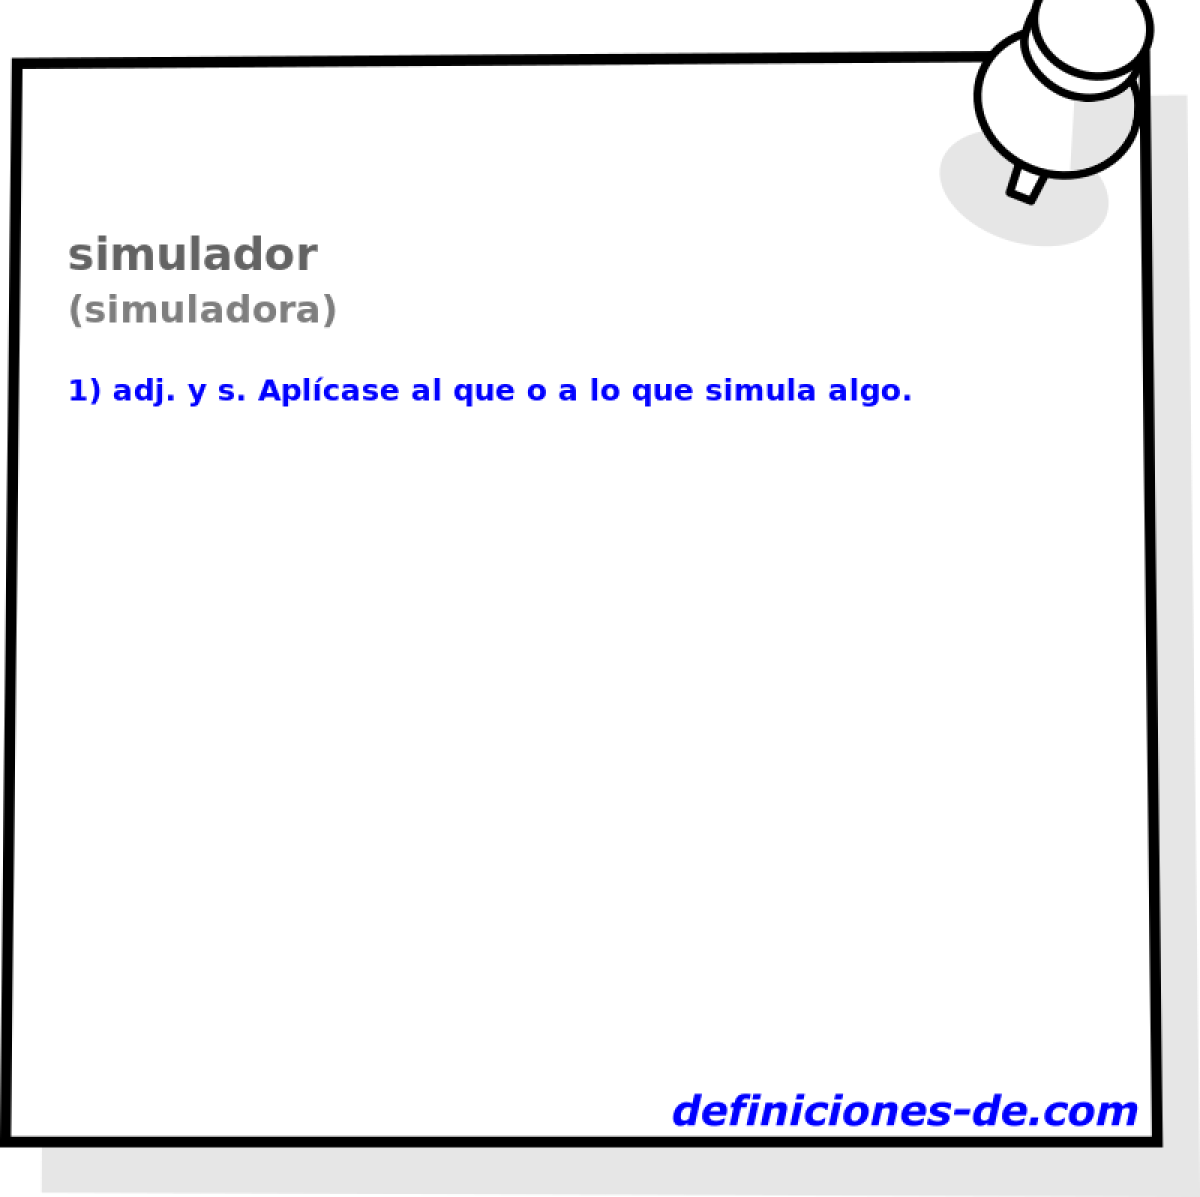 simulador (simuladora)